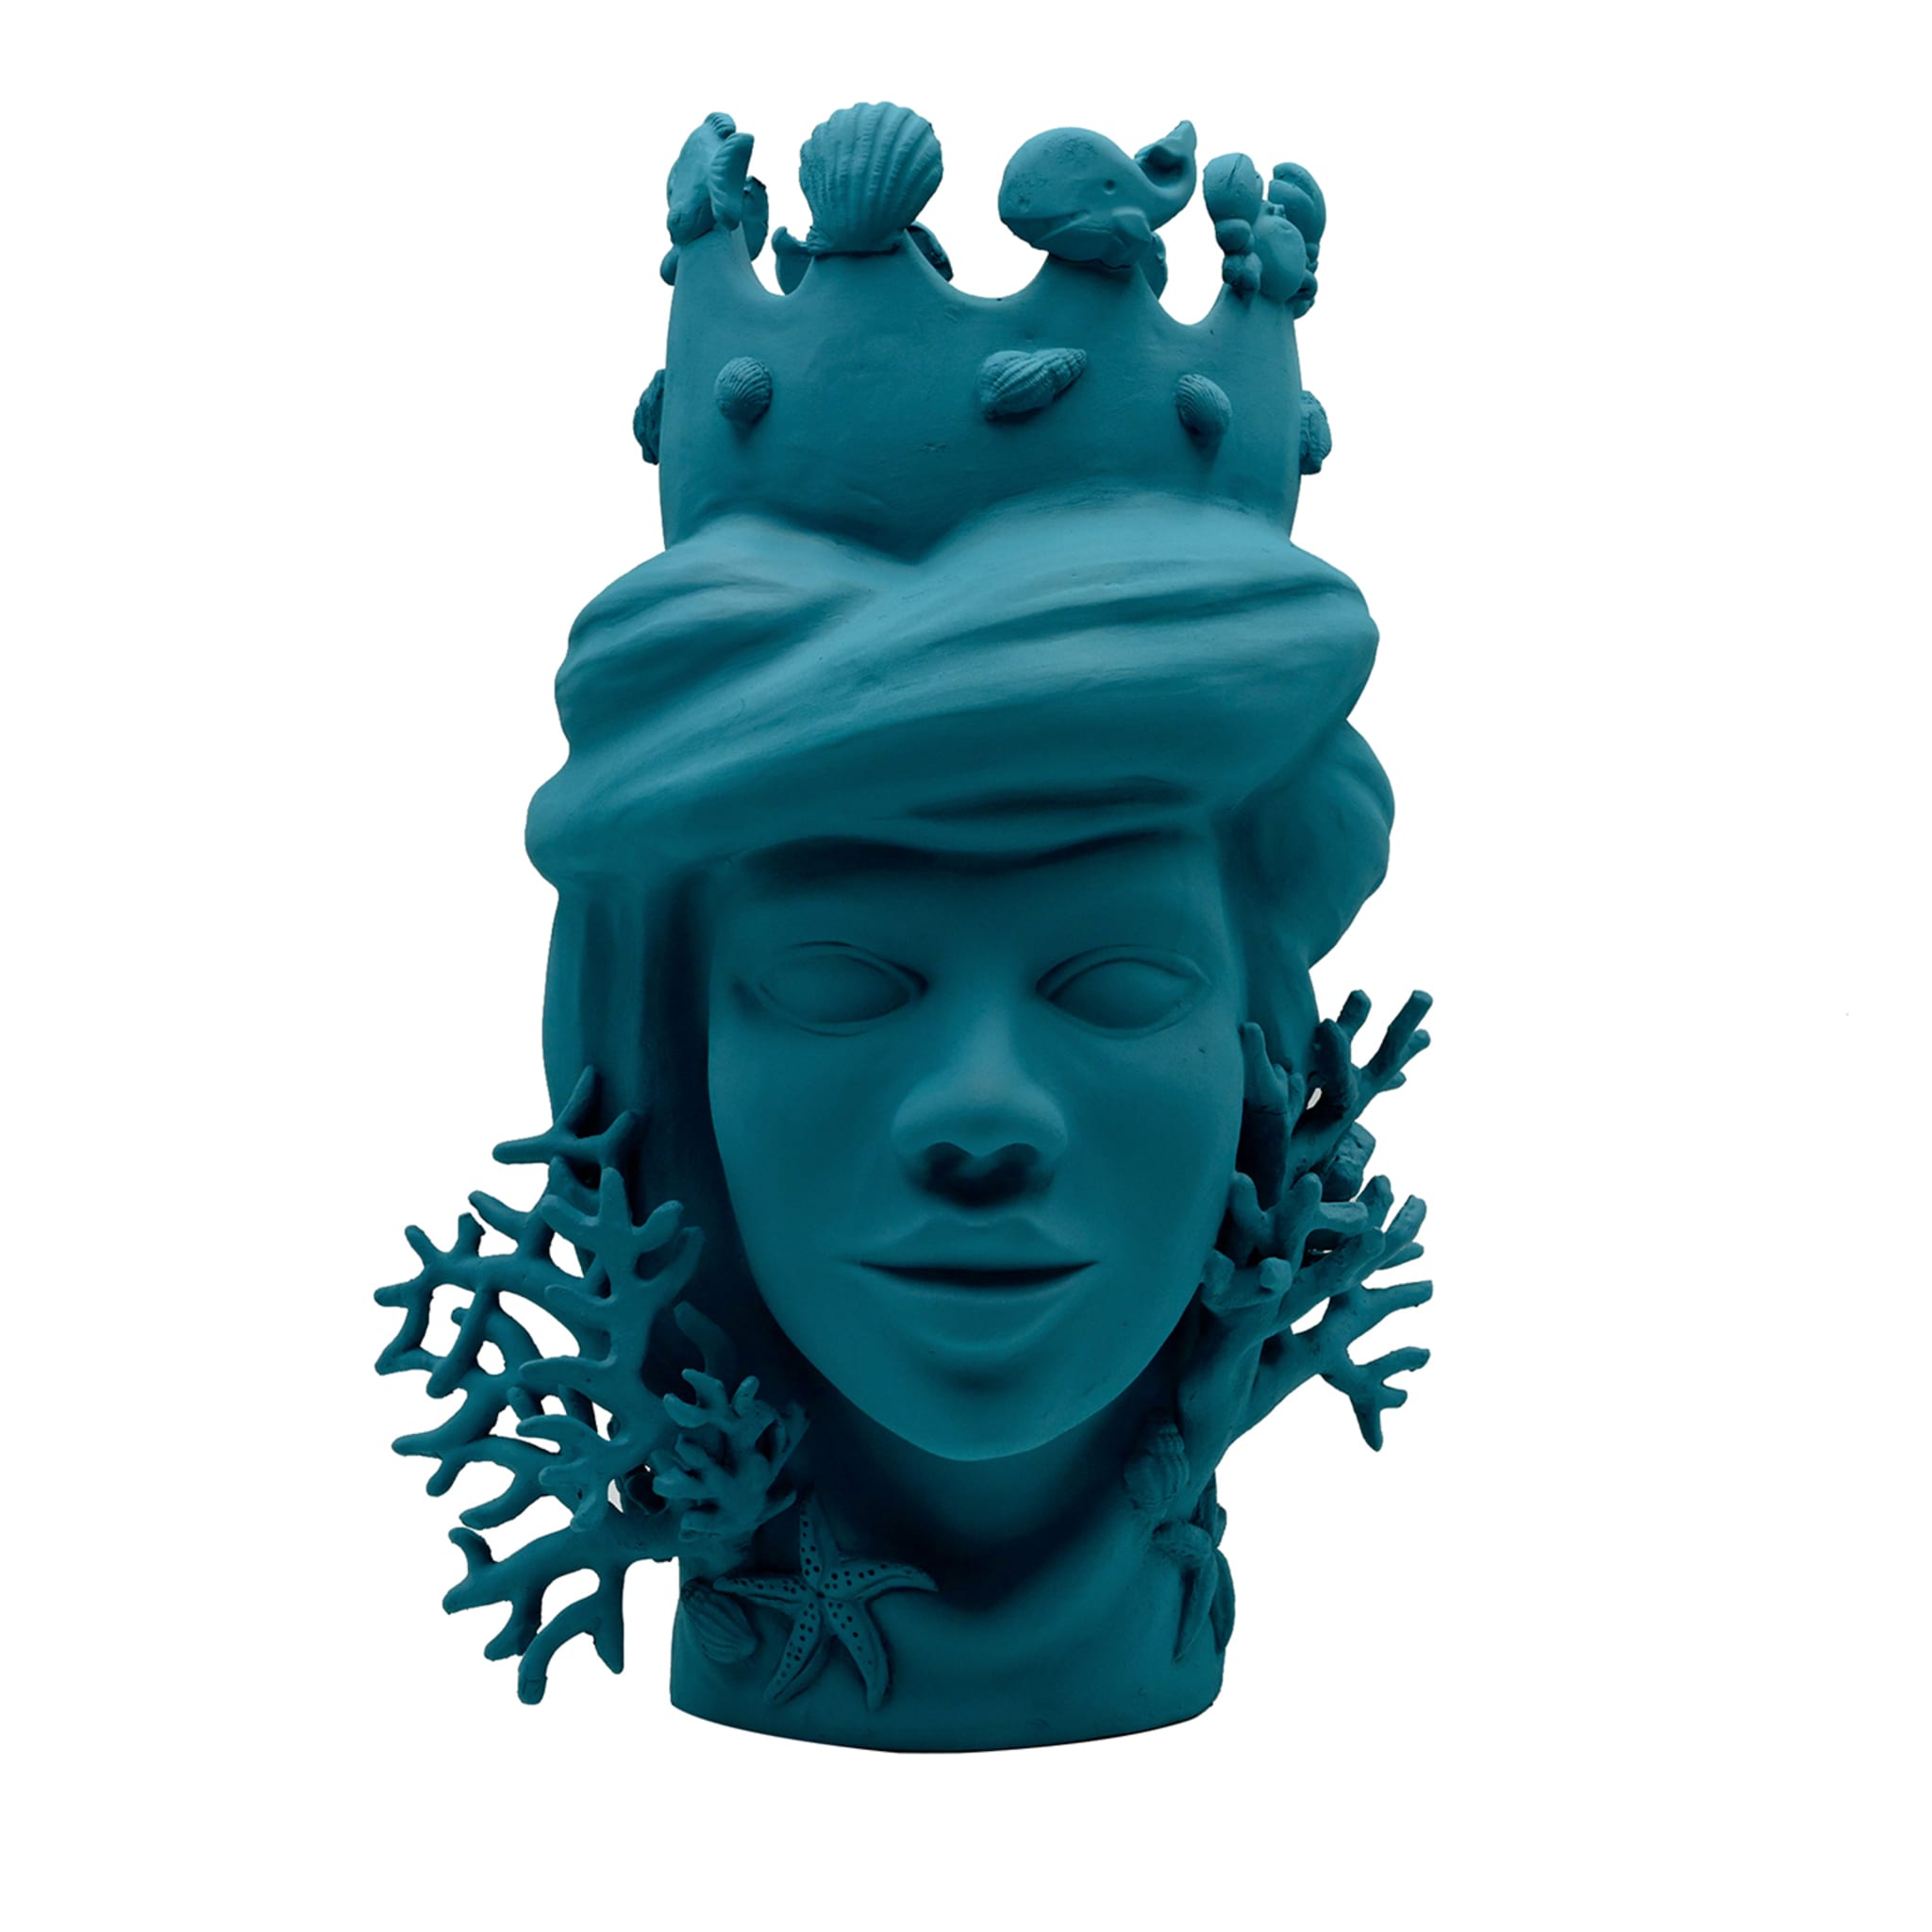 Teal Moor's Head Handcrafted Italian Sculpture